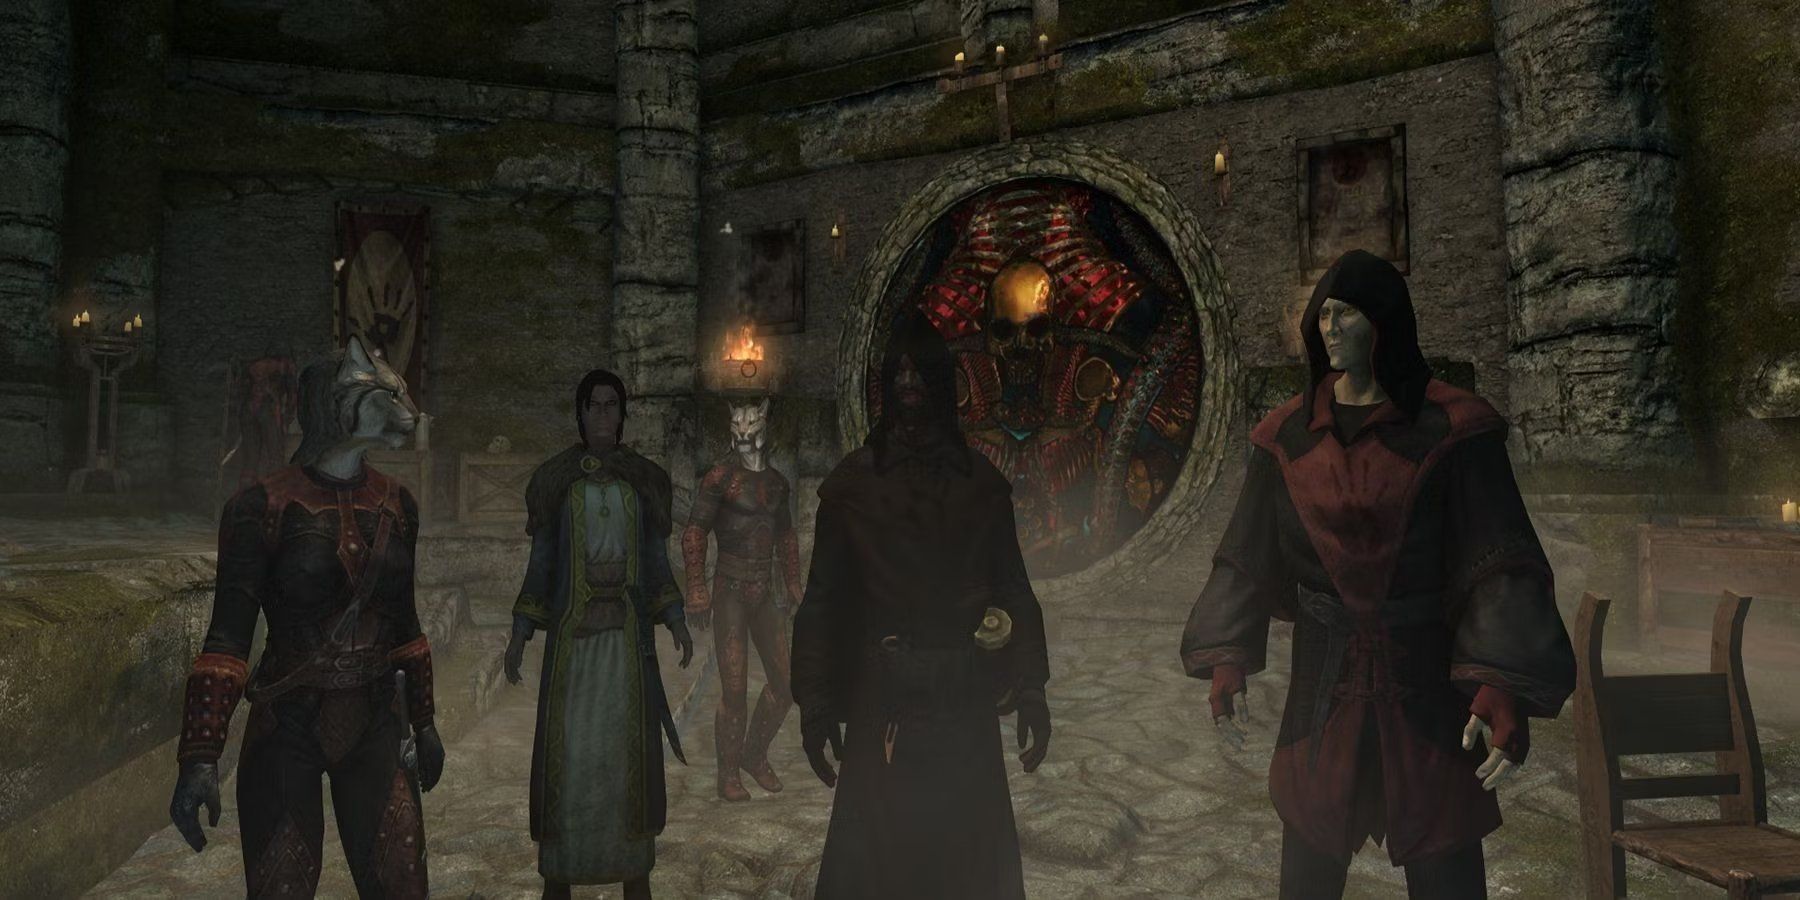 The Dark Brotherhood in Skyrim